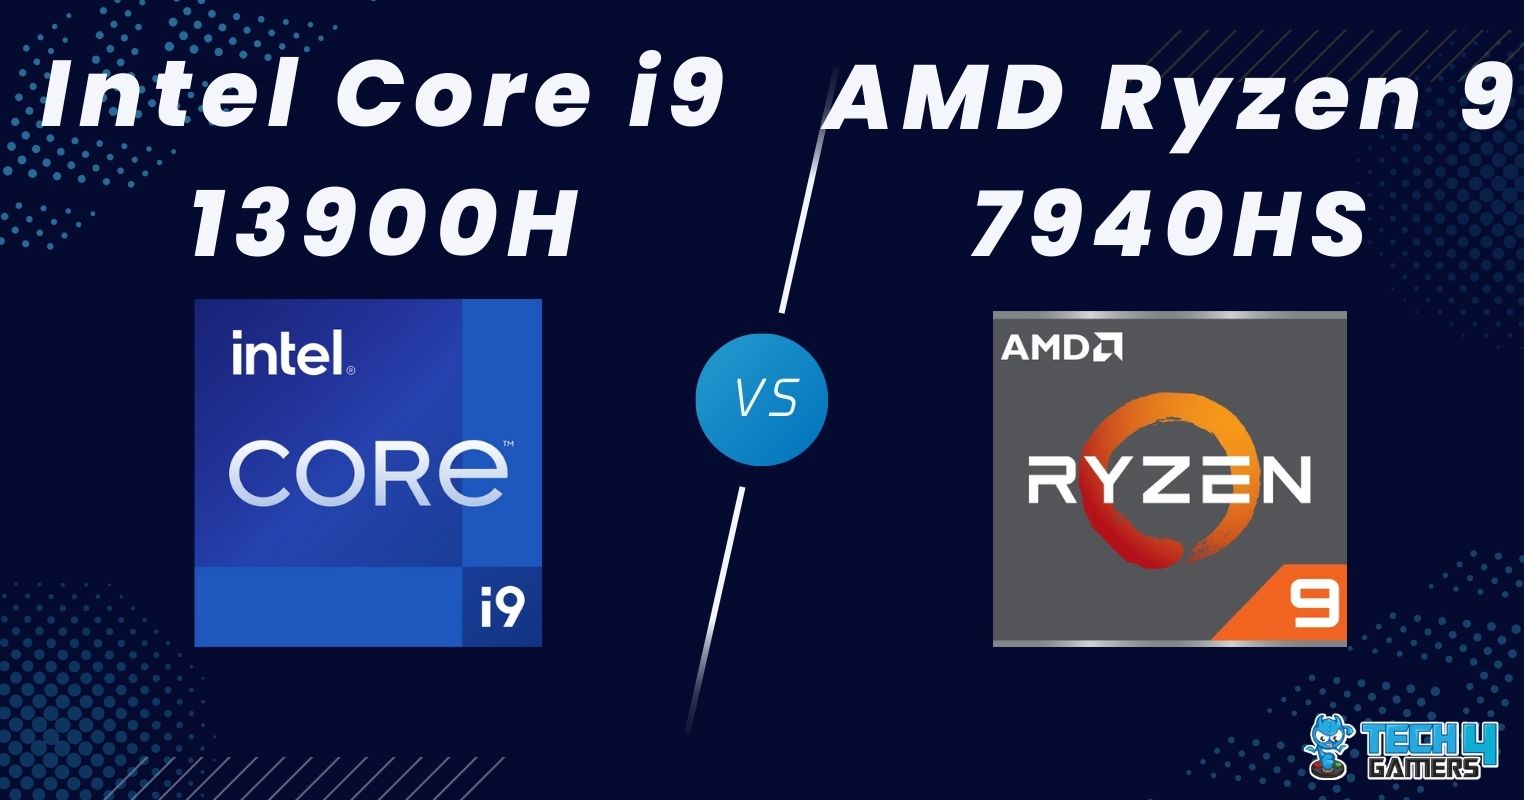 AMD Ryzen 9 7940HS vs INTEL Core i9 13900HX Technical Comparison 